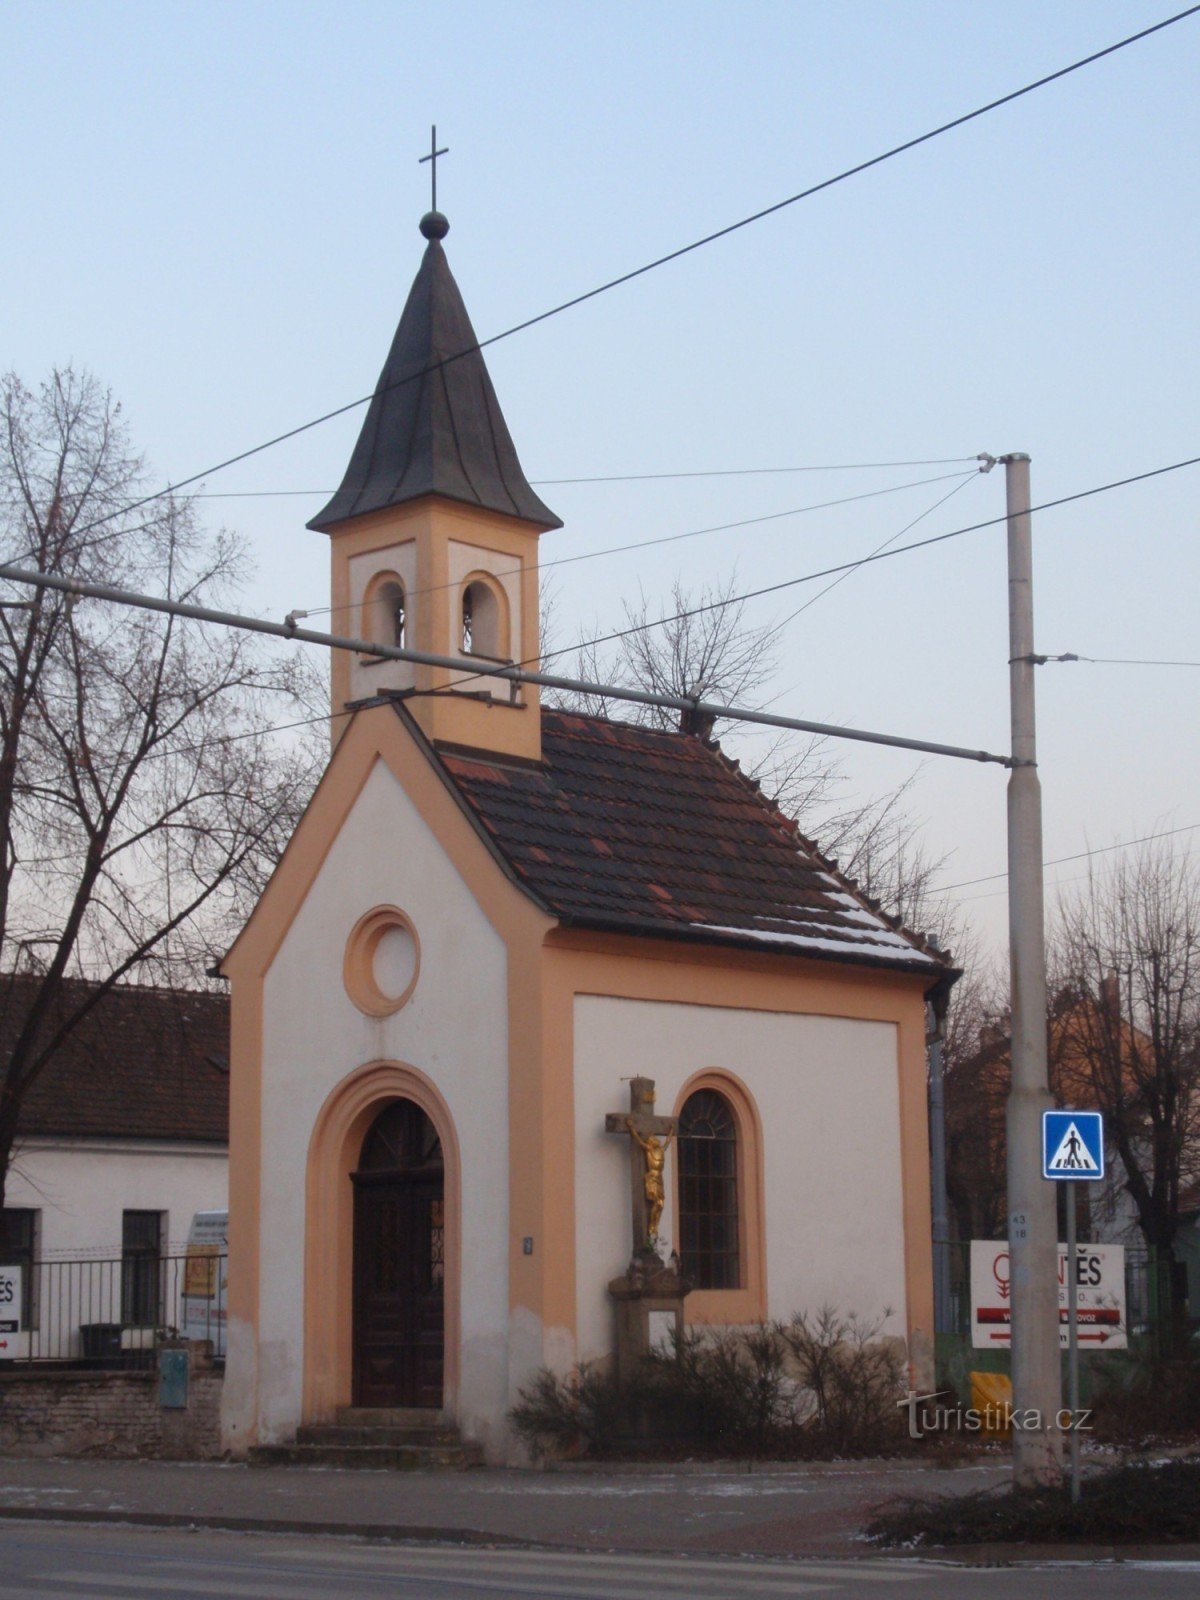 Capela Sf. Františka din Brno-Židenice